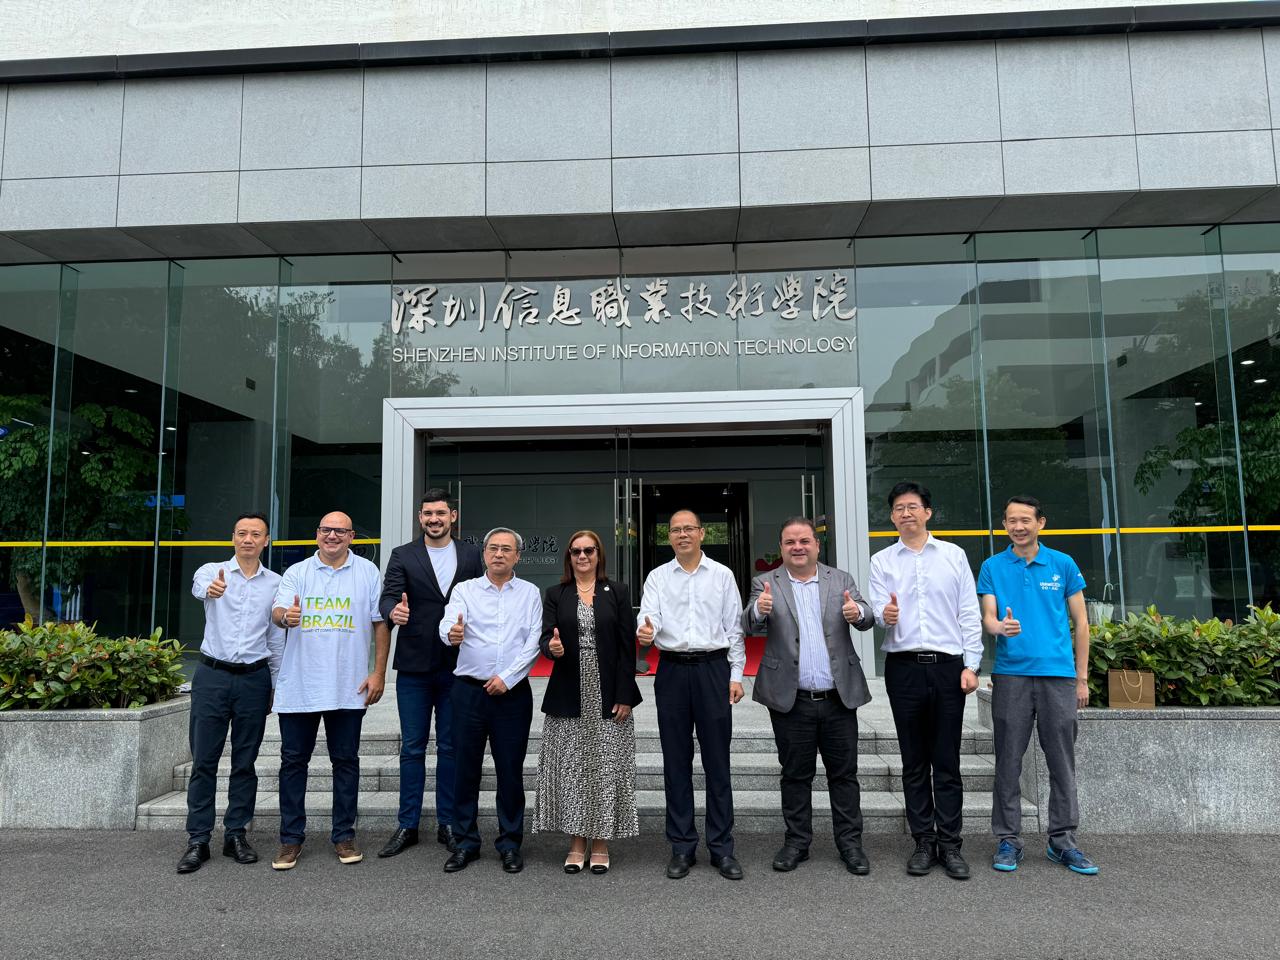 Delegação do IFPB visita o Instituto de Tecnologia e Informação de Shenzhen, na China (2).jpeg